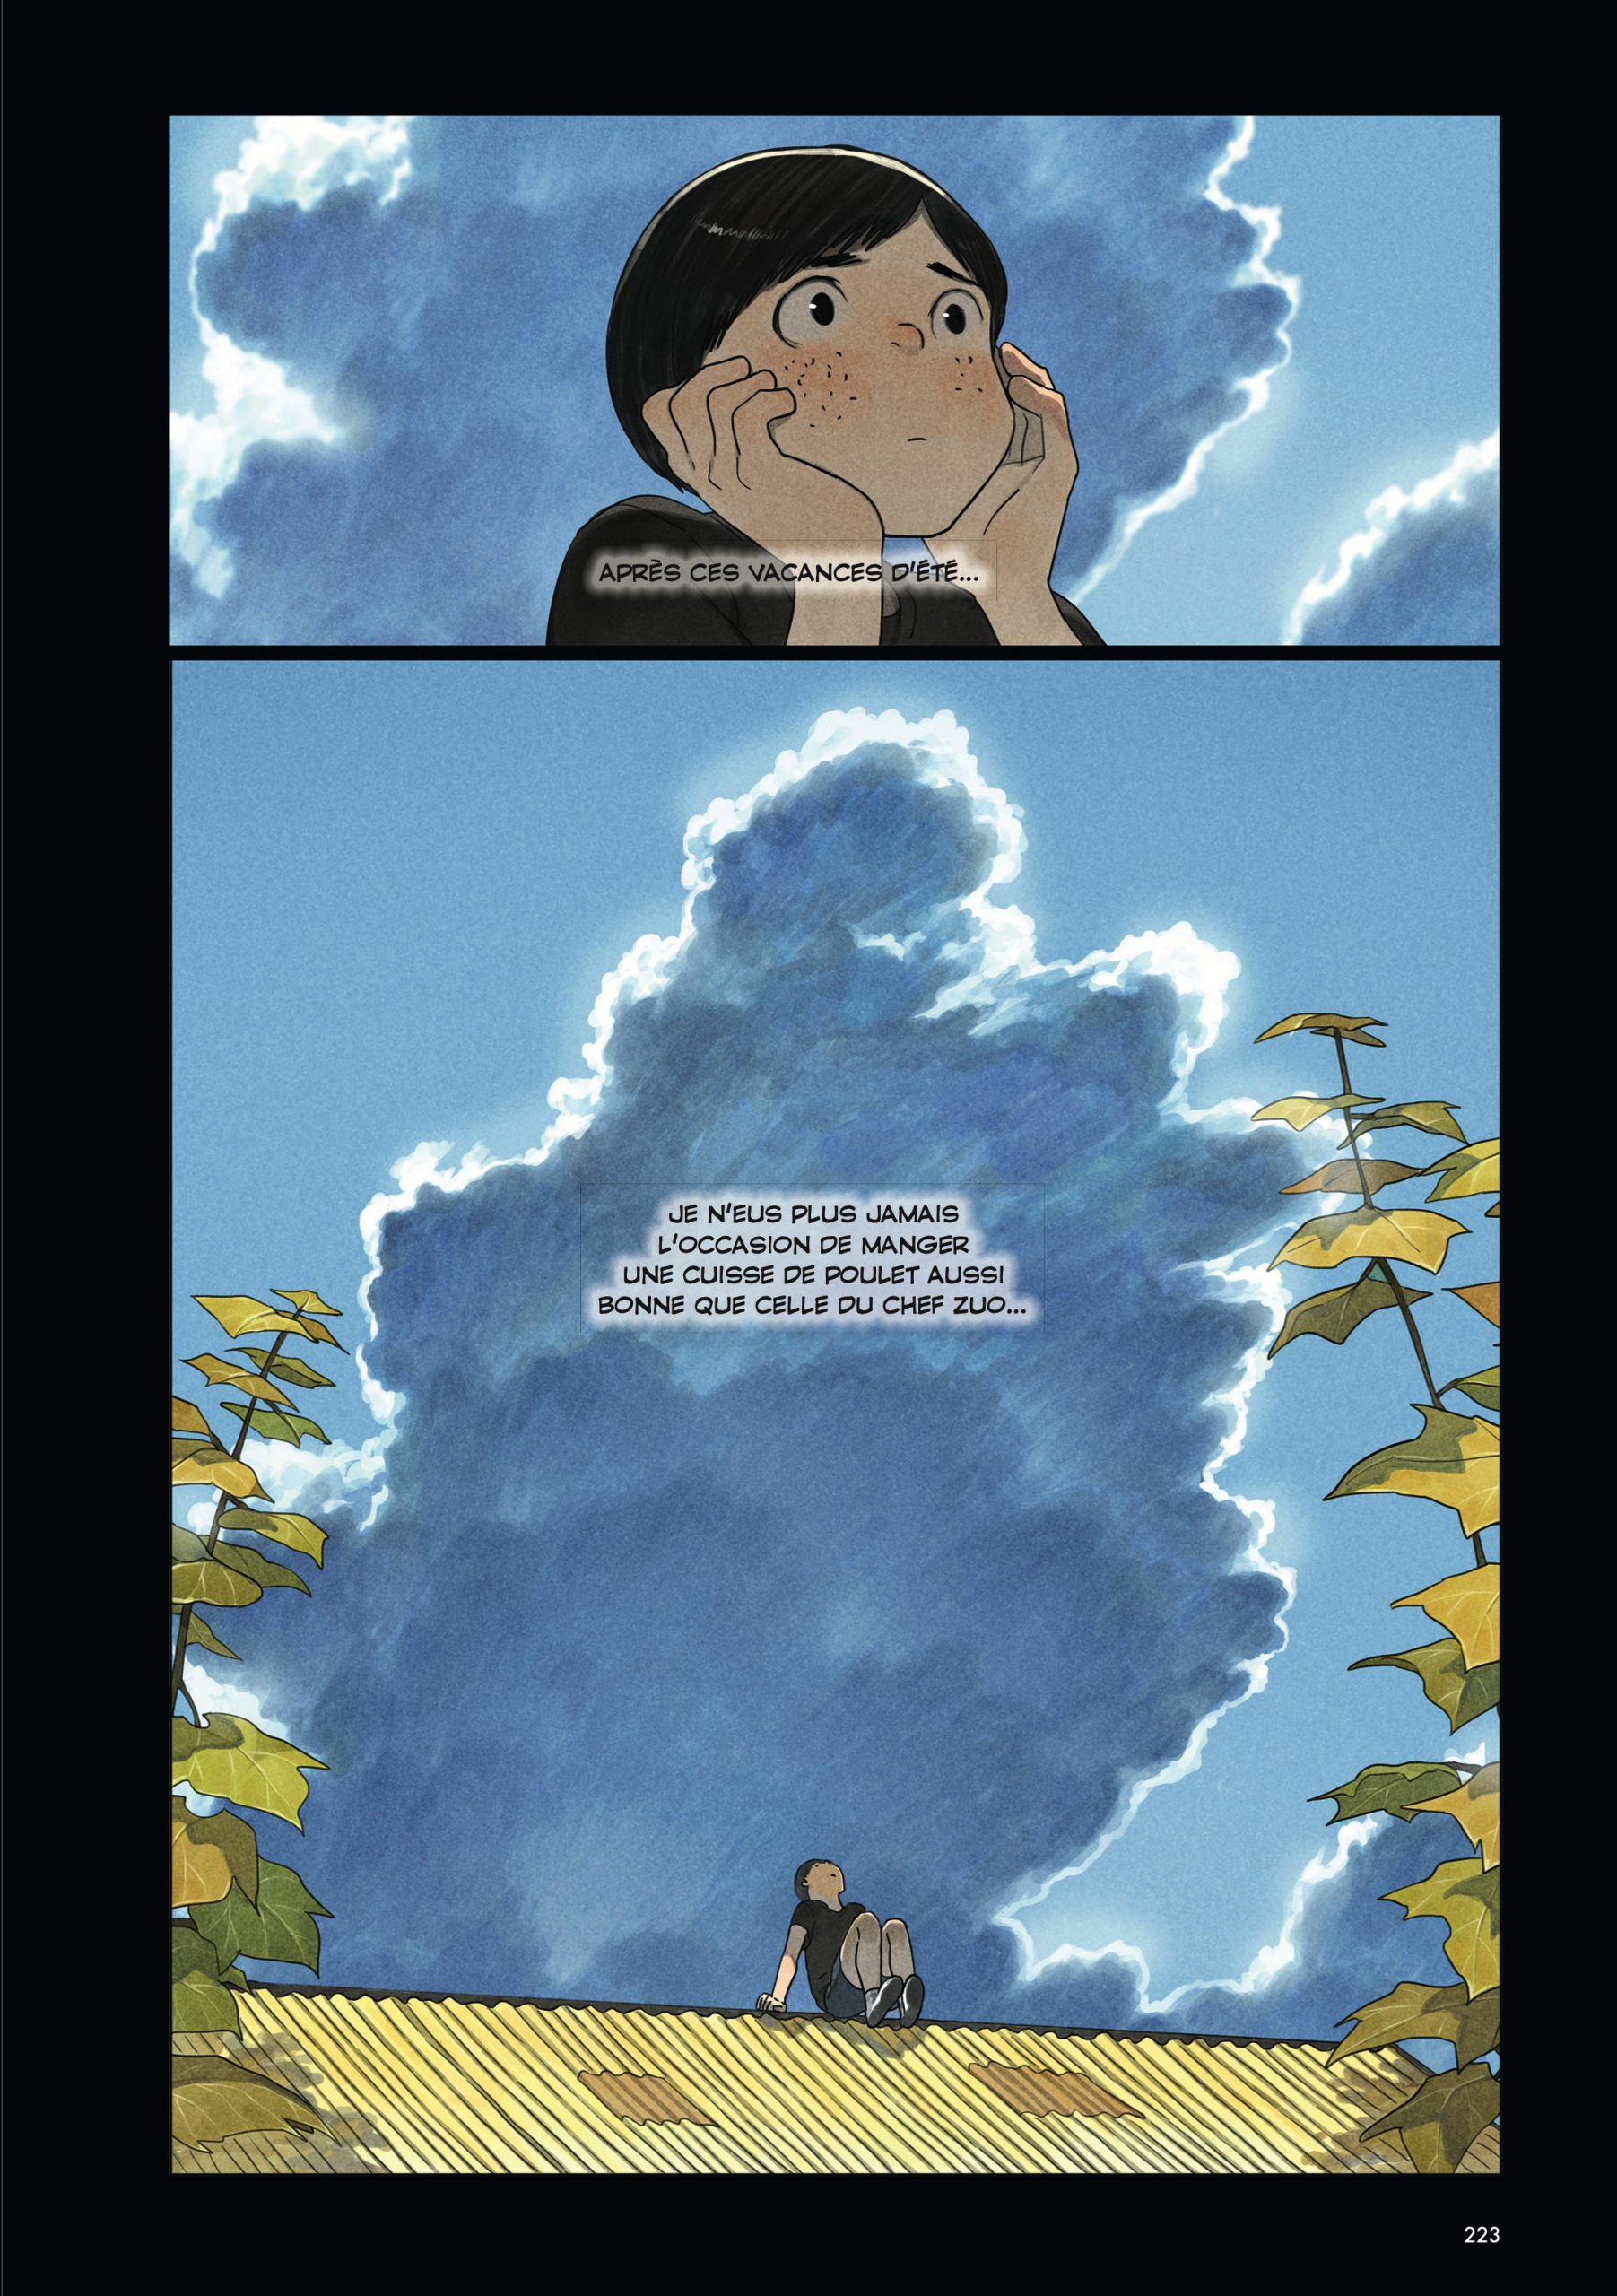 Extrait de la bande dessinée "Un dernier soir à Pékin", scénario et dessin Golo Zhao, Glénat. (Copyright : Glénat)